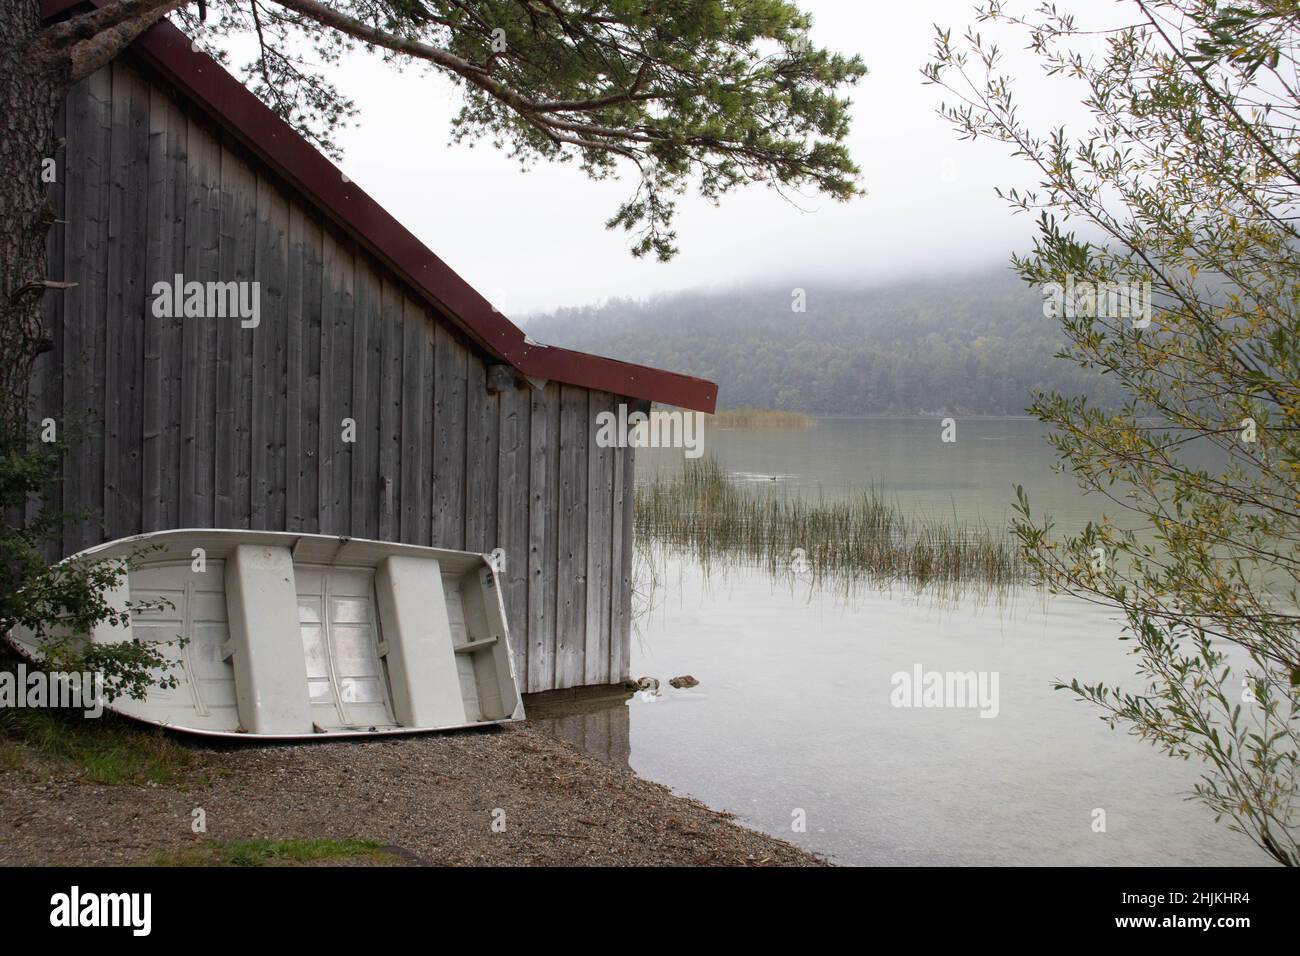 Ein weisses Anglerboot steht an einem Holzhaus (Bootshaus) am Ufer des Weissensees angelehnt Stock Photo